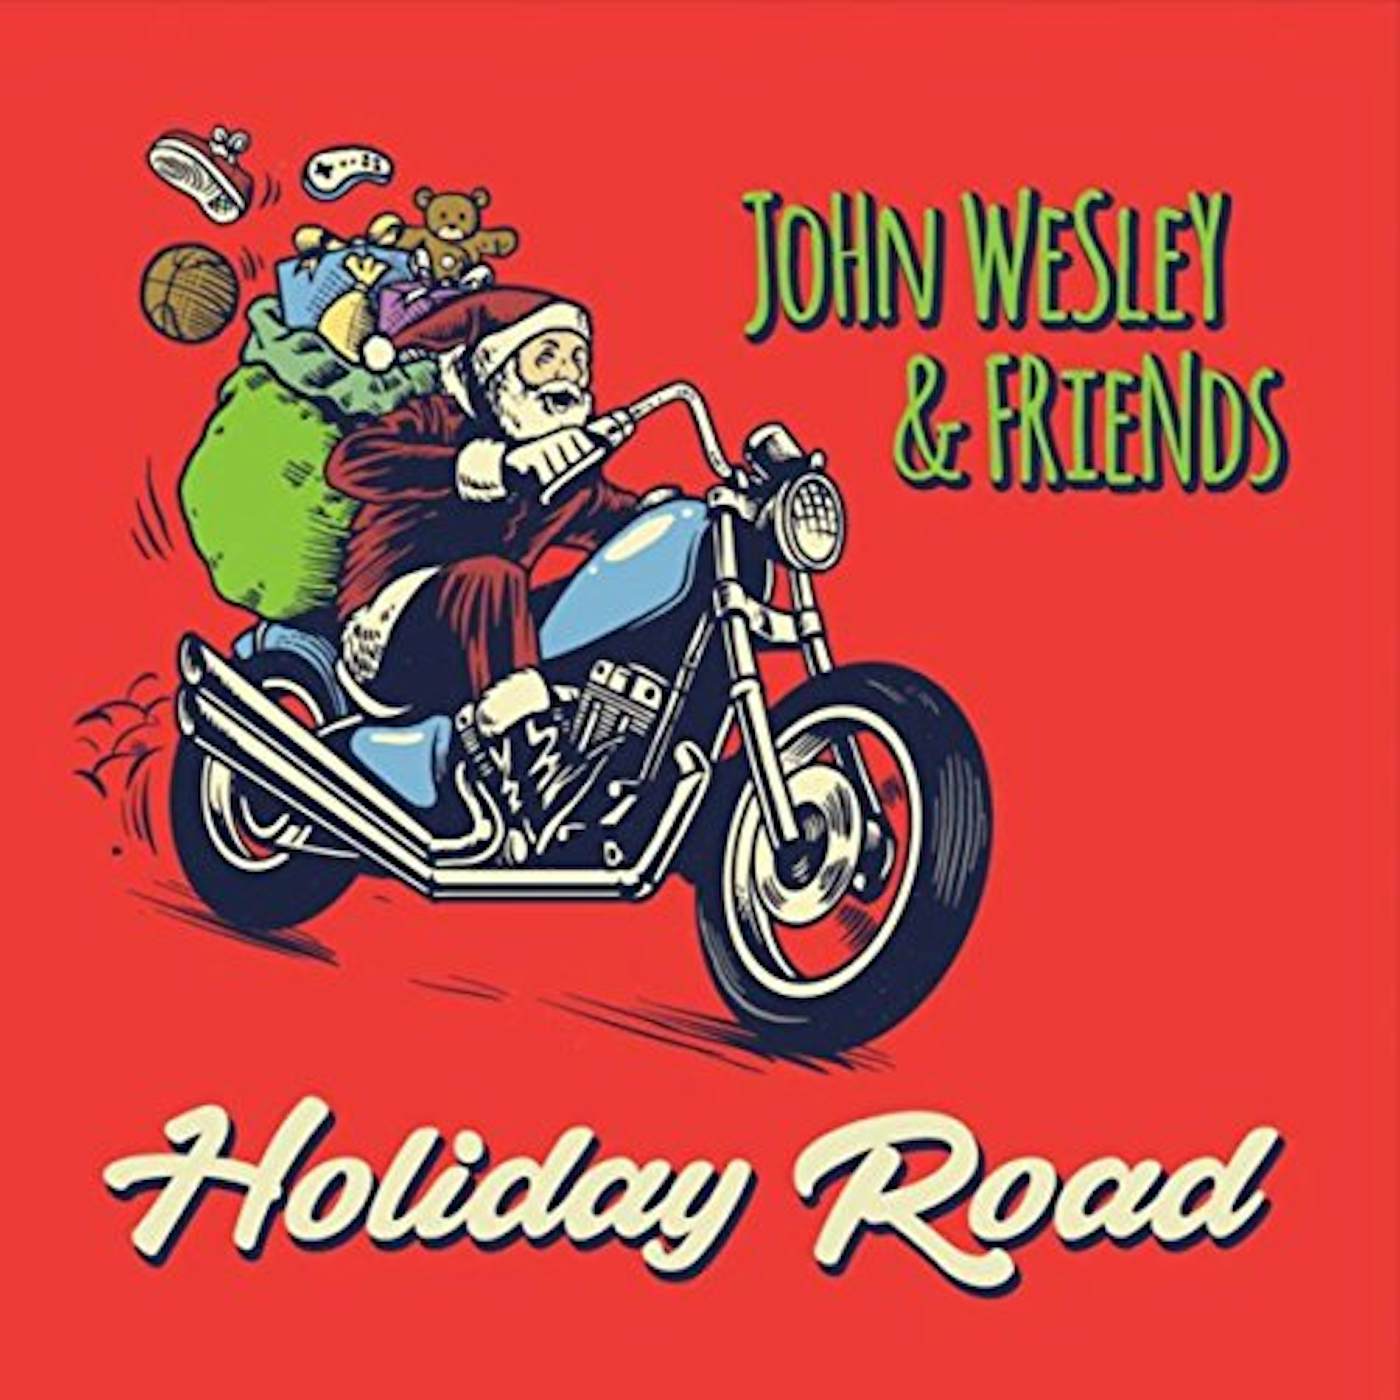 John Wesley HOLIDAY ROAD CD